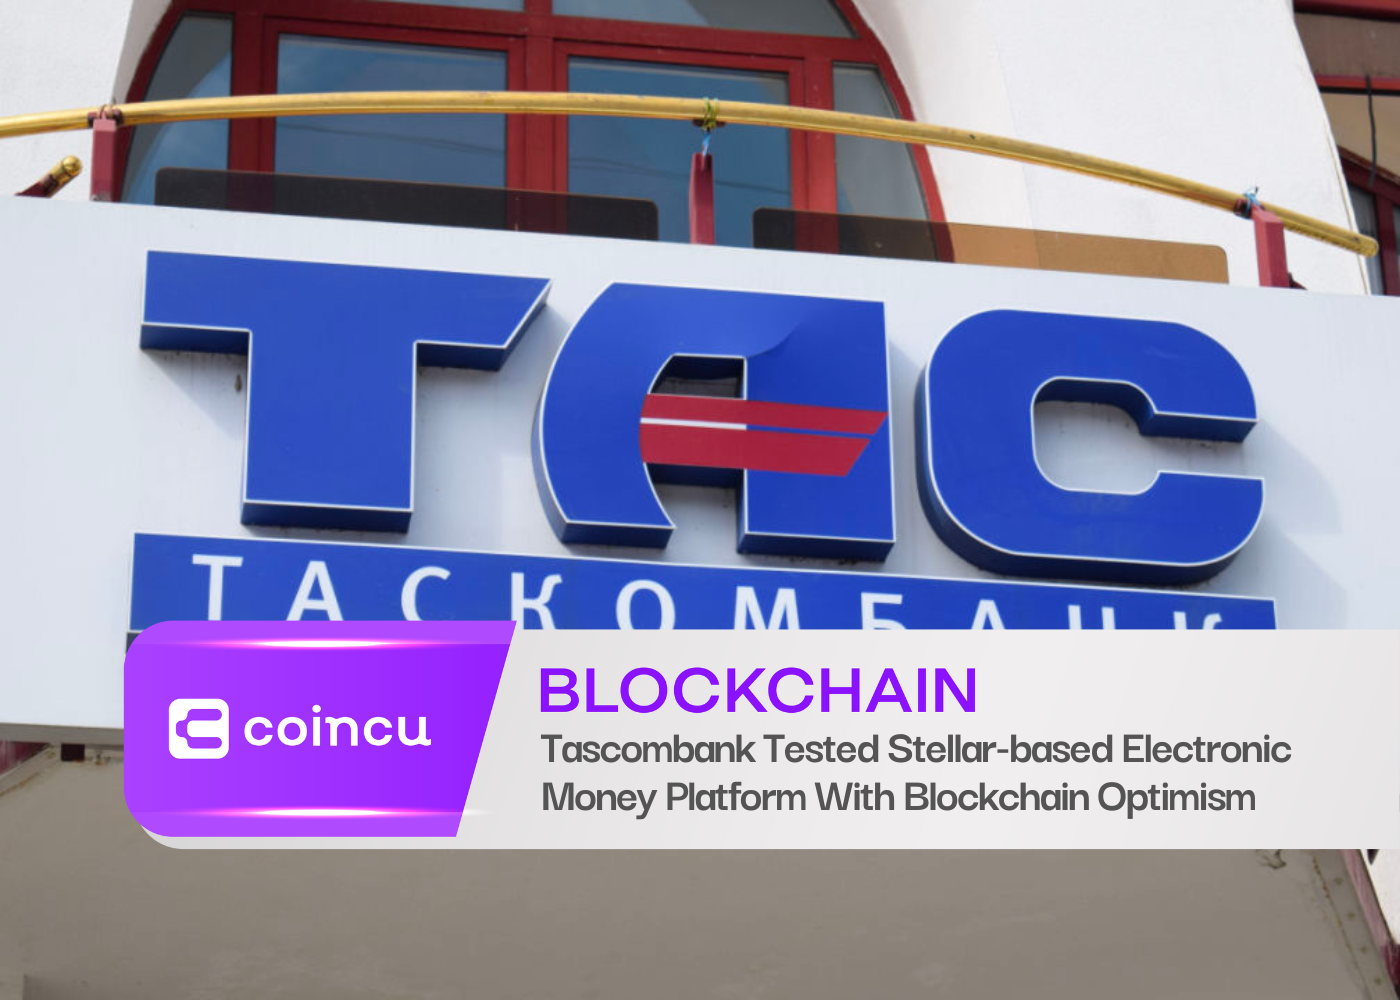 Tascombank Tested Stellar-based Electronic Money Platform With Blockchain Optimism